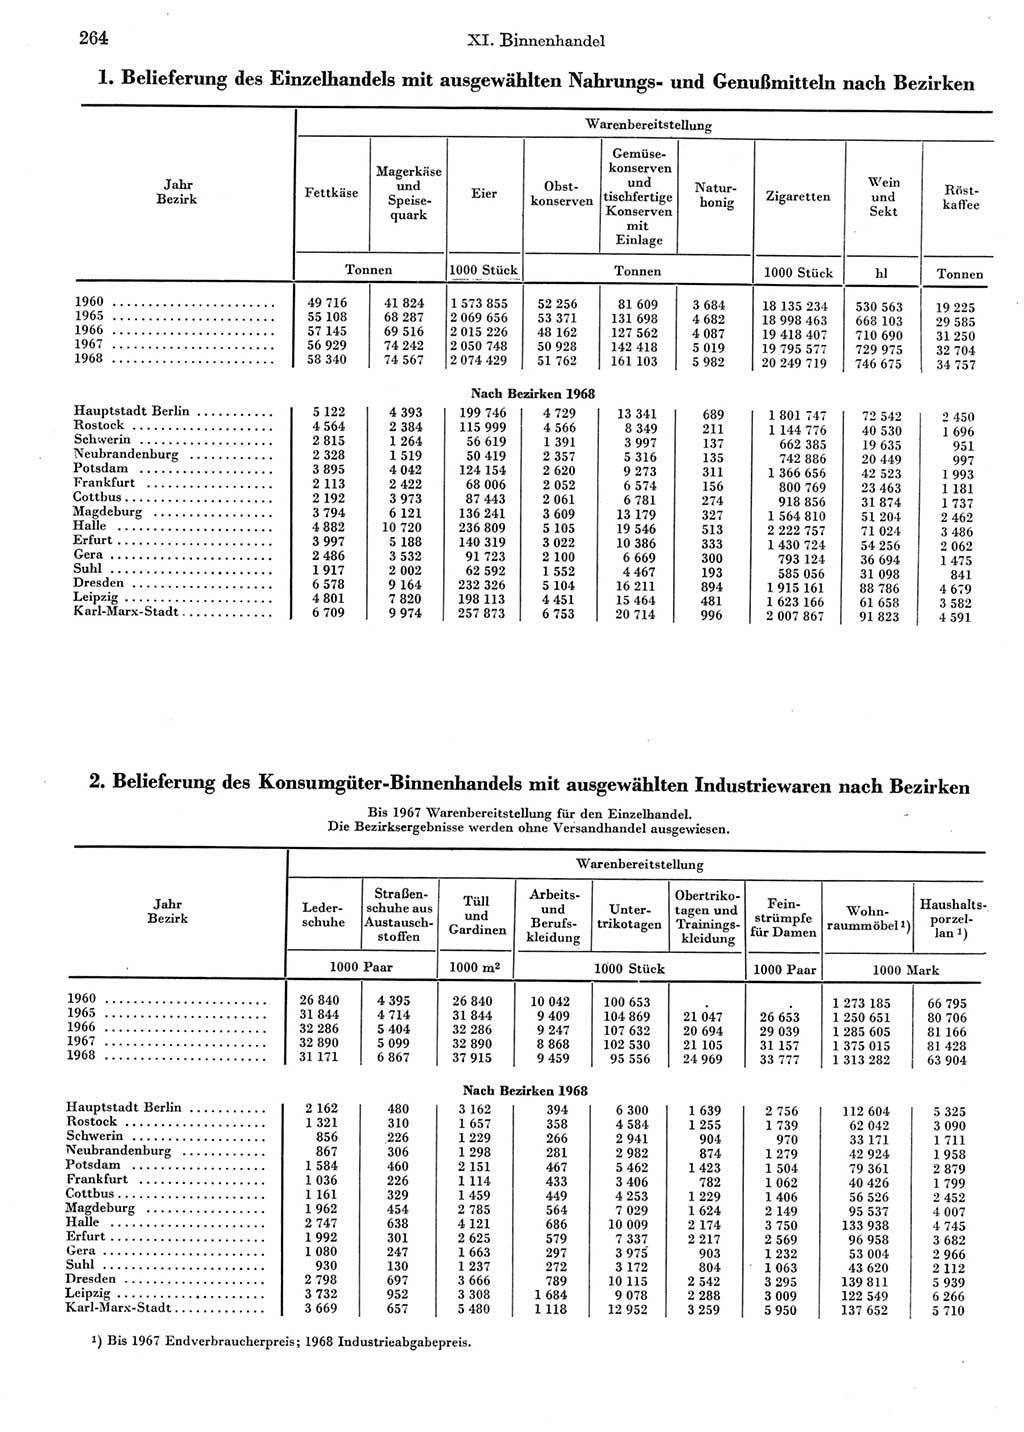 Statistisches Jahrbuch der Deutschen Demokratischen Republik (DDR) 1969, Seite 264 (Stat. Jb. DDR 1969, S. 264)